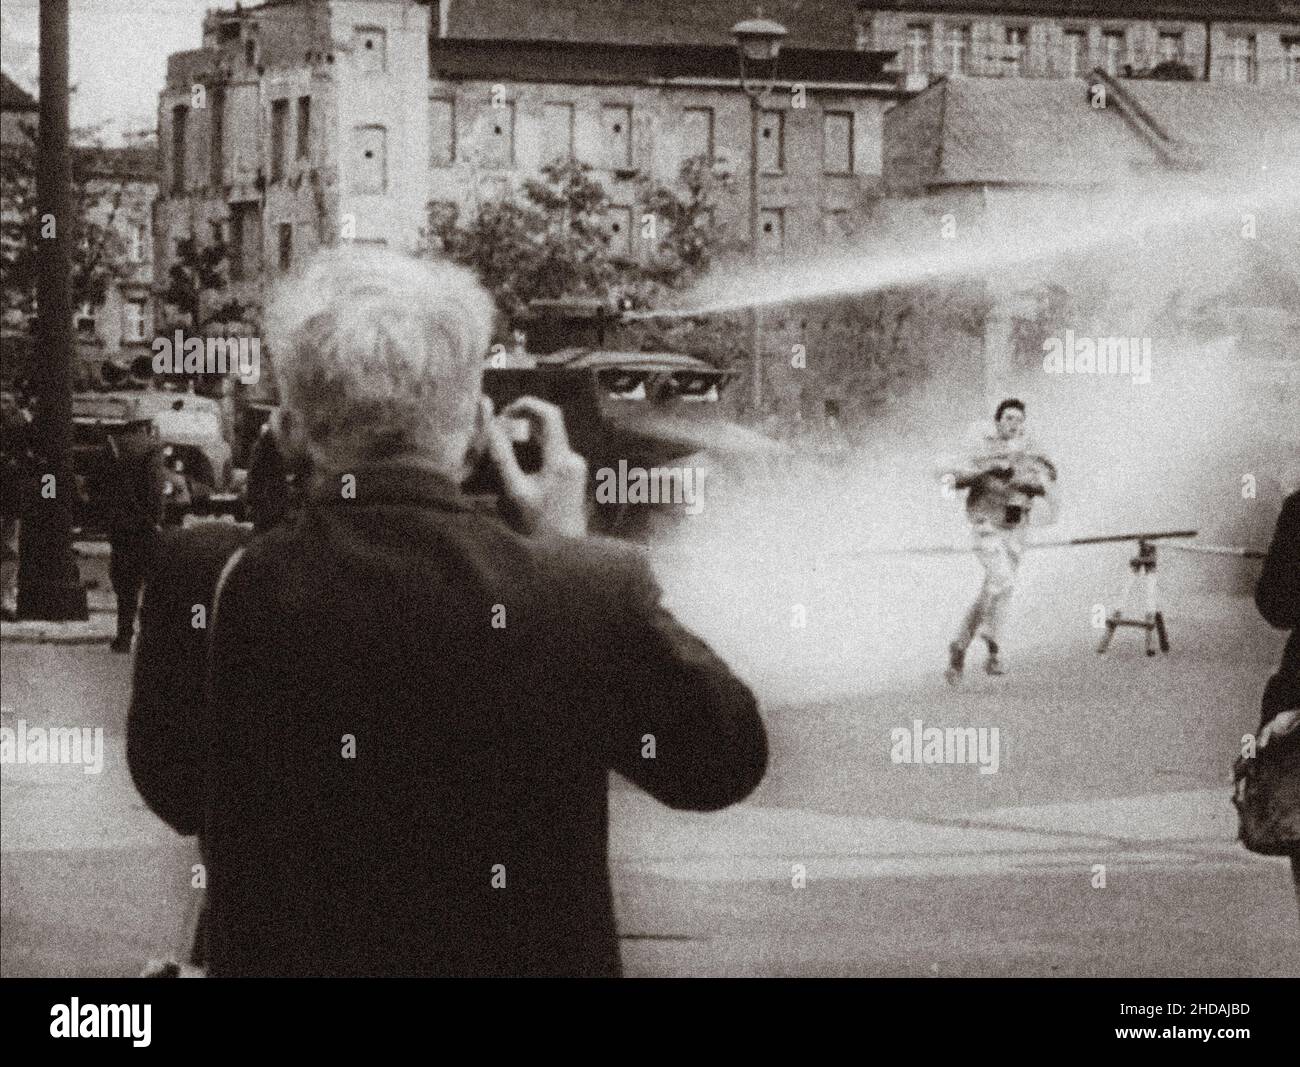 Berlino crisi del 1961. Serie di foto d'archivio raffigura il divieto di viaggio agosto 1961 tra Berlino Est e Ovest e mostra la costruzione di barricate t Foto Stock